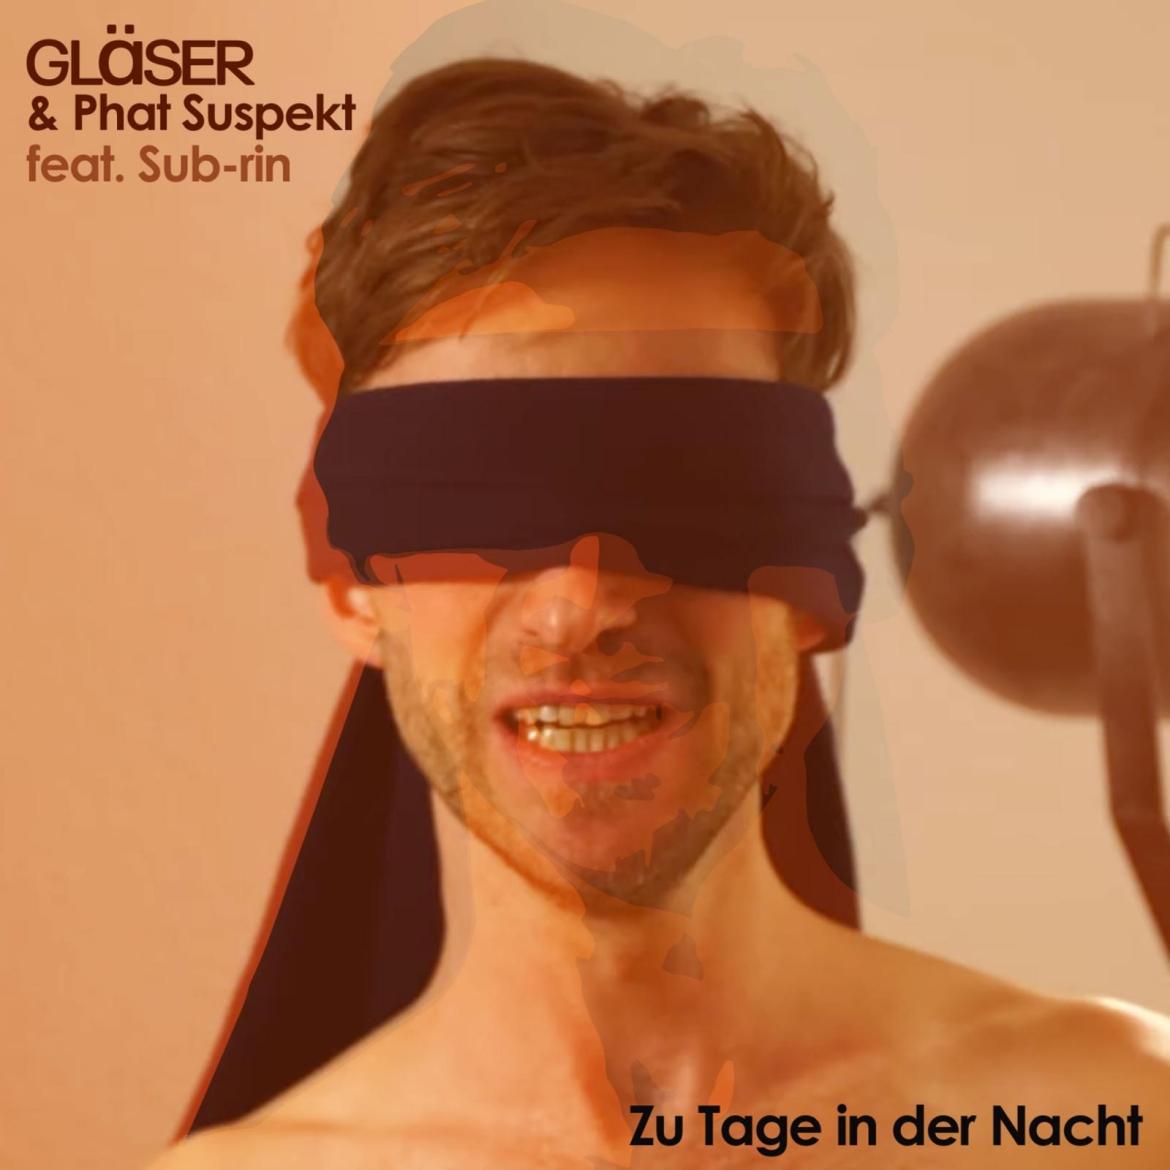 Gläser & Phat Suspekt feat. Sub-rin "Zu Tage in der Nacht"